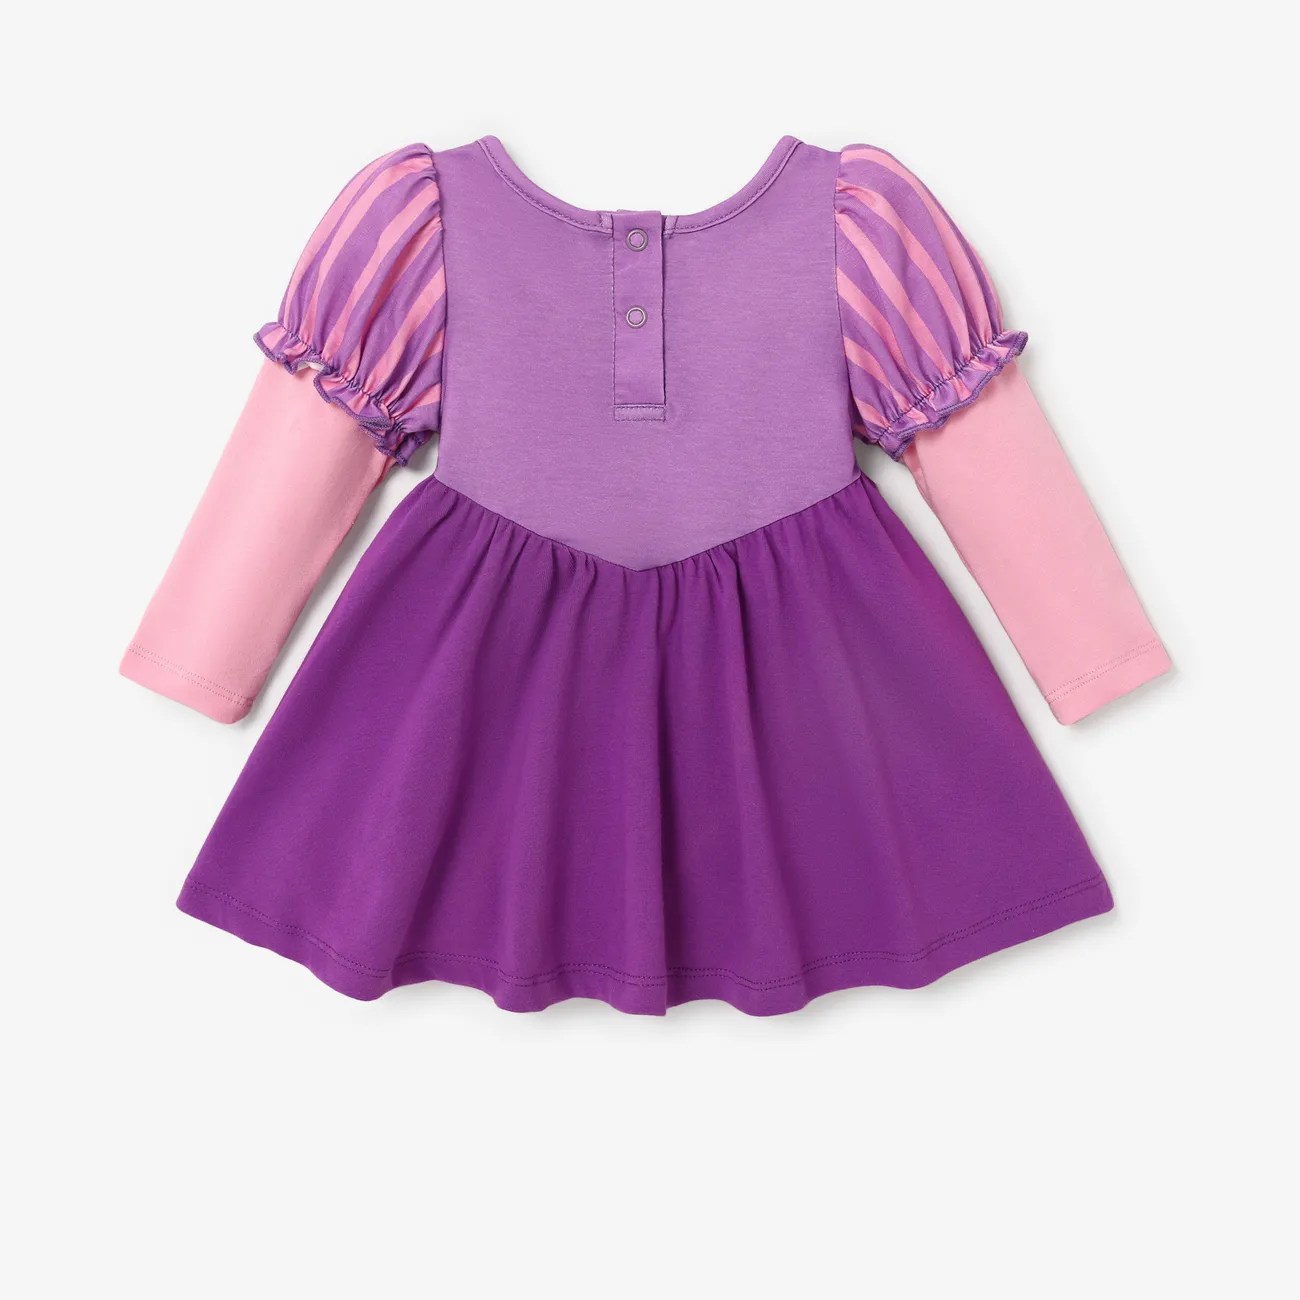 Disney Princess Baby/Toddler Girl Naia™ Character Print Cosplay Long-sleeve Dress Purple big image 1